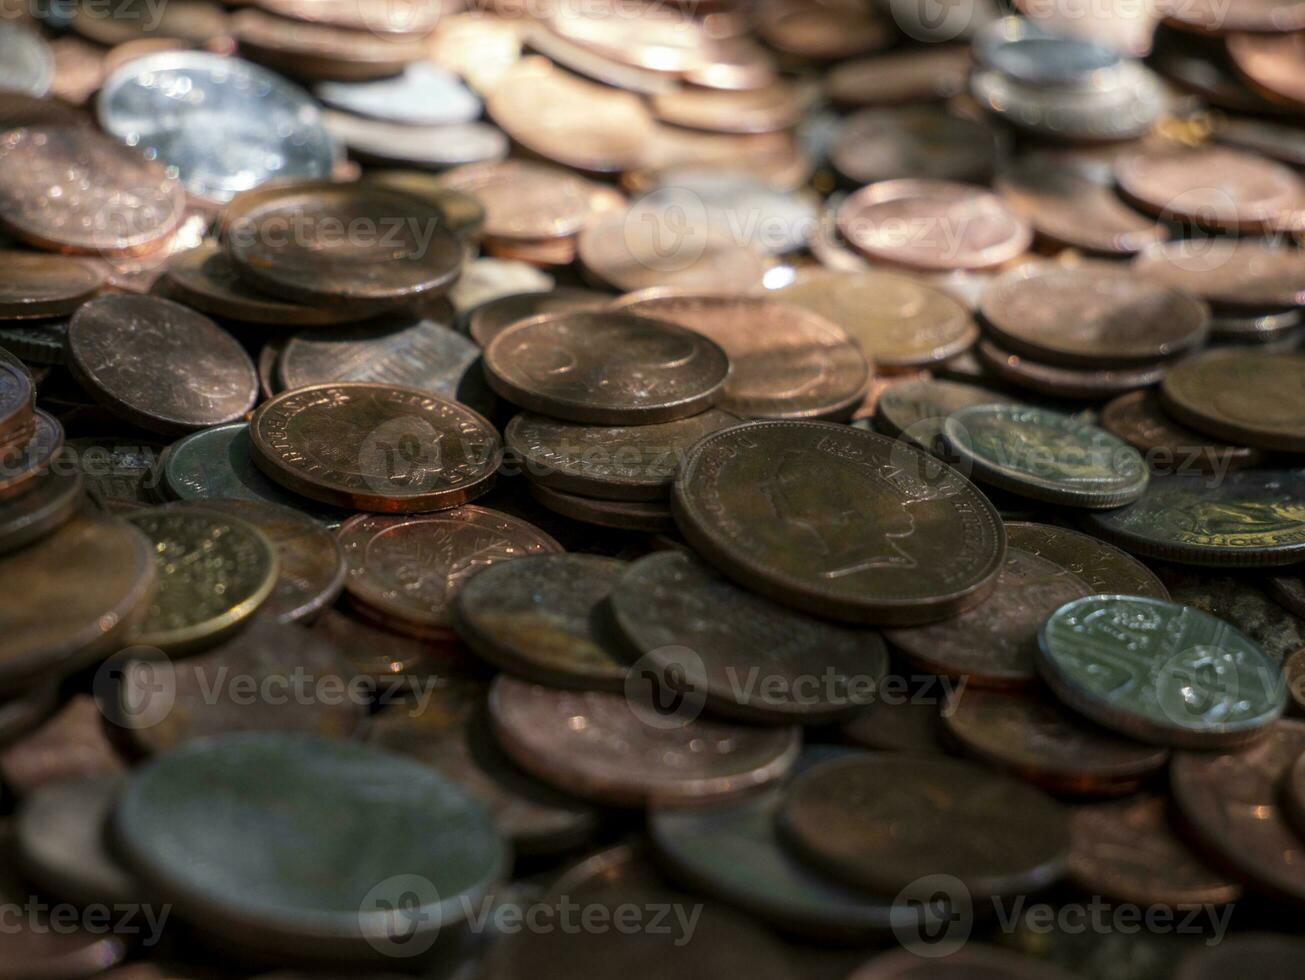 Stapel von Münzen, anders europäisch und amerikanisch Metall Münzen, Geld Hintergrund foto